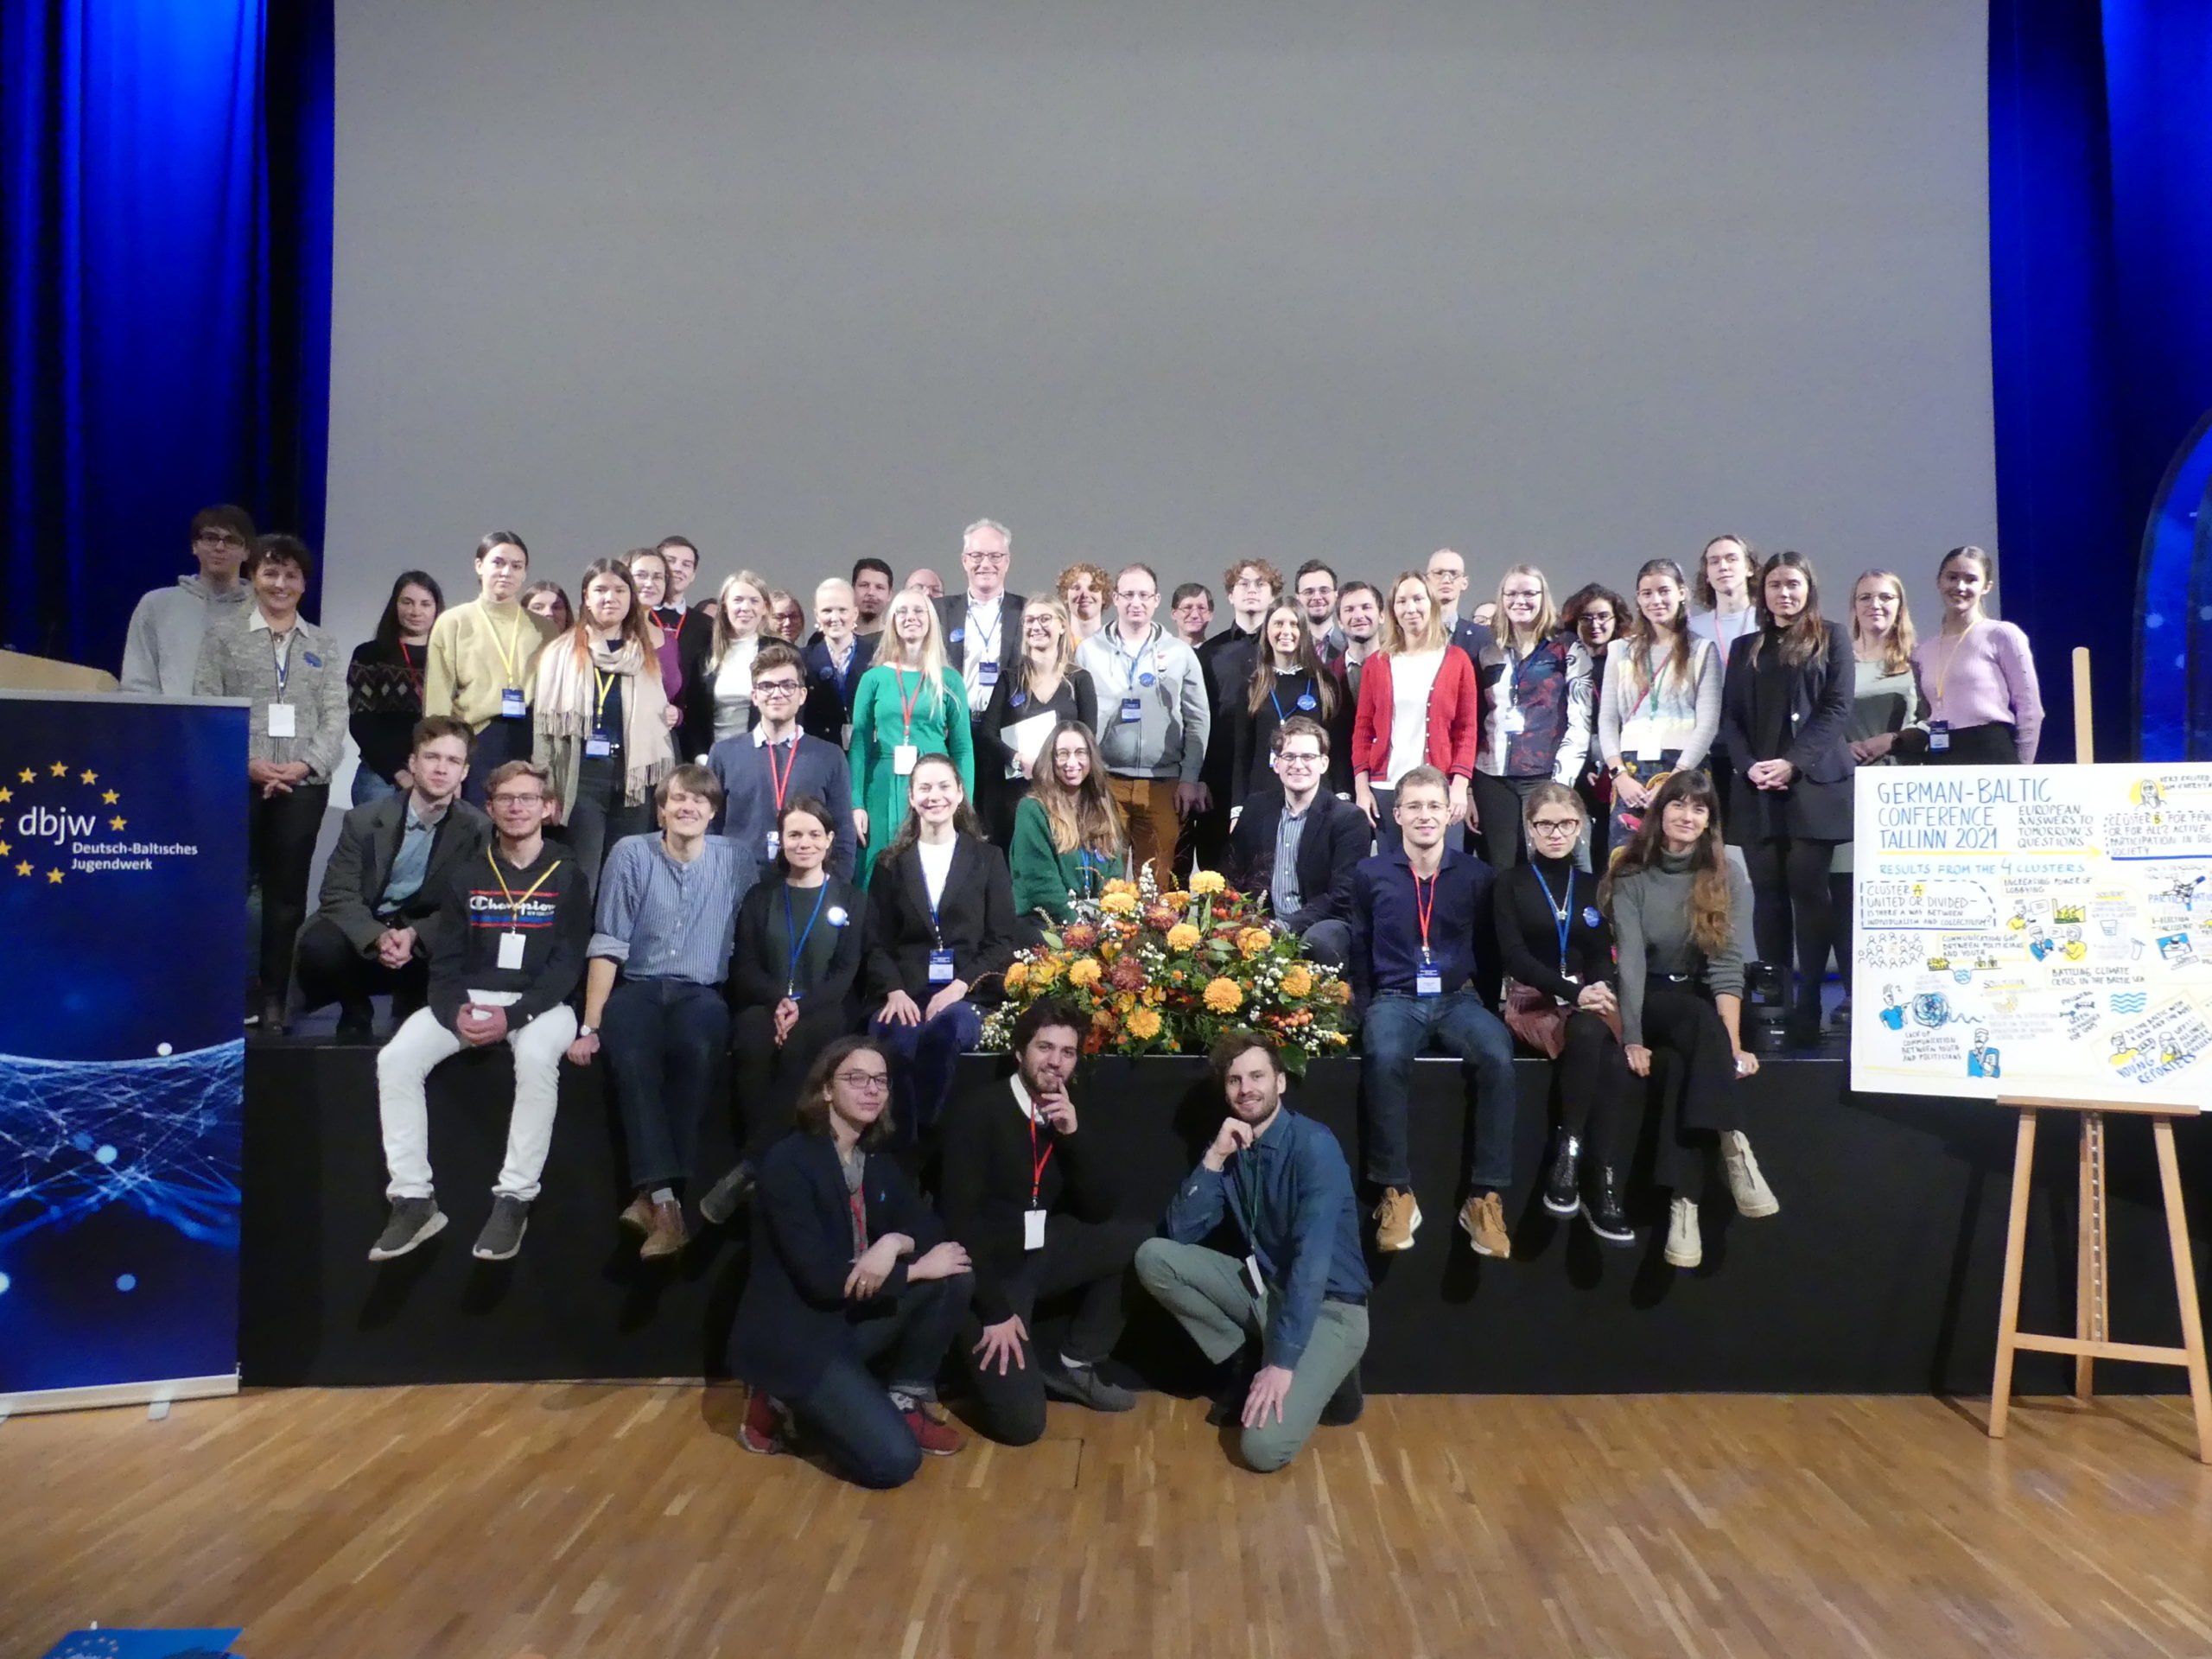 Foto: Gruppenbild mit Teilnehmerinnen und Teilnehmern der Konferenz in Tallinn